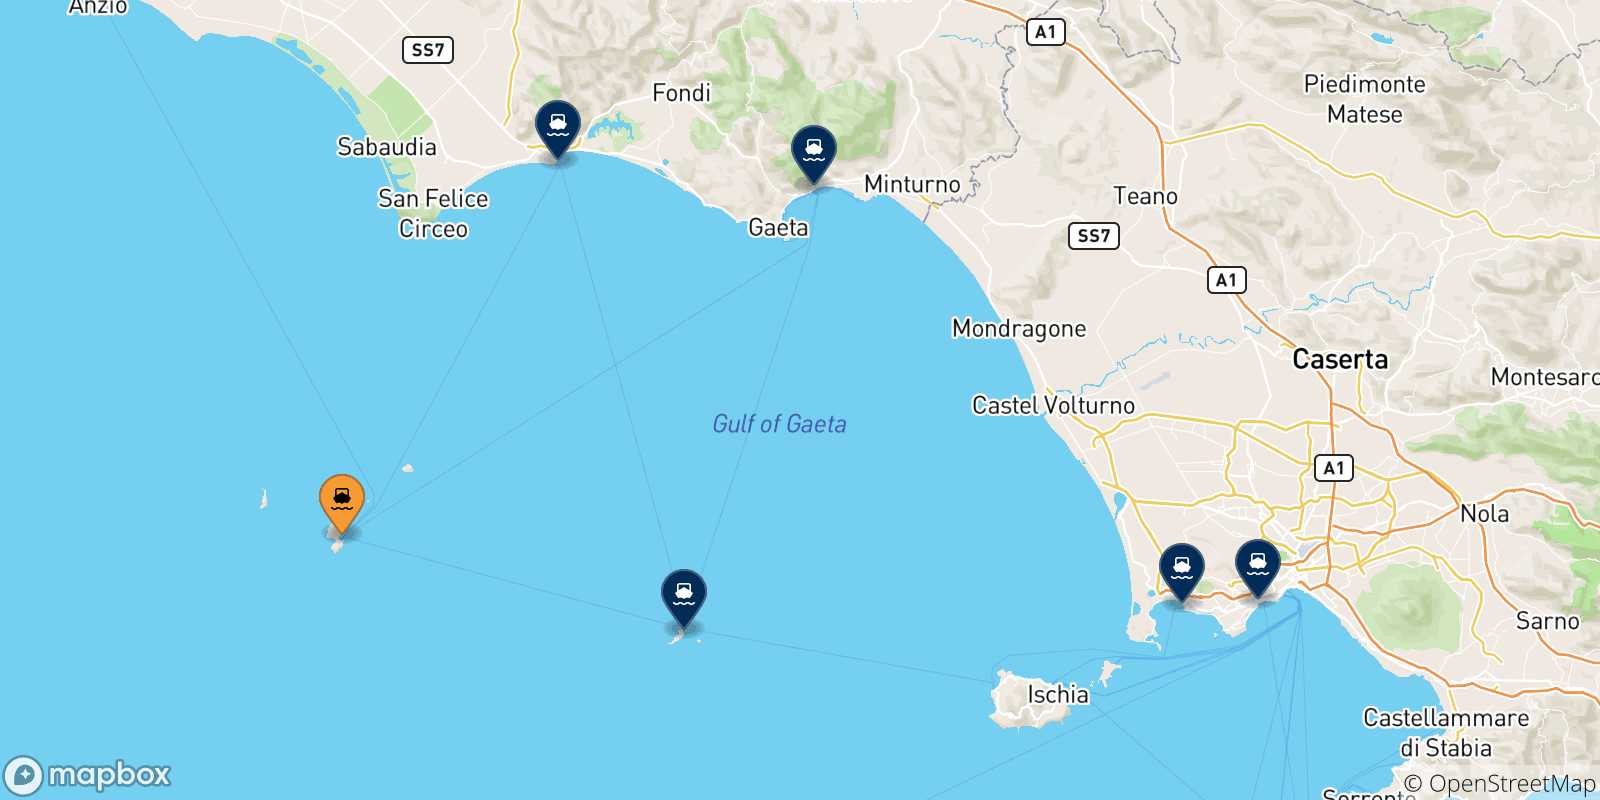 Mappa delle possibili rotte tra Ponza e l'Italia